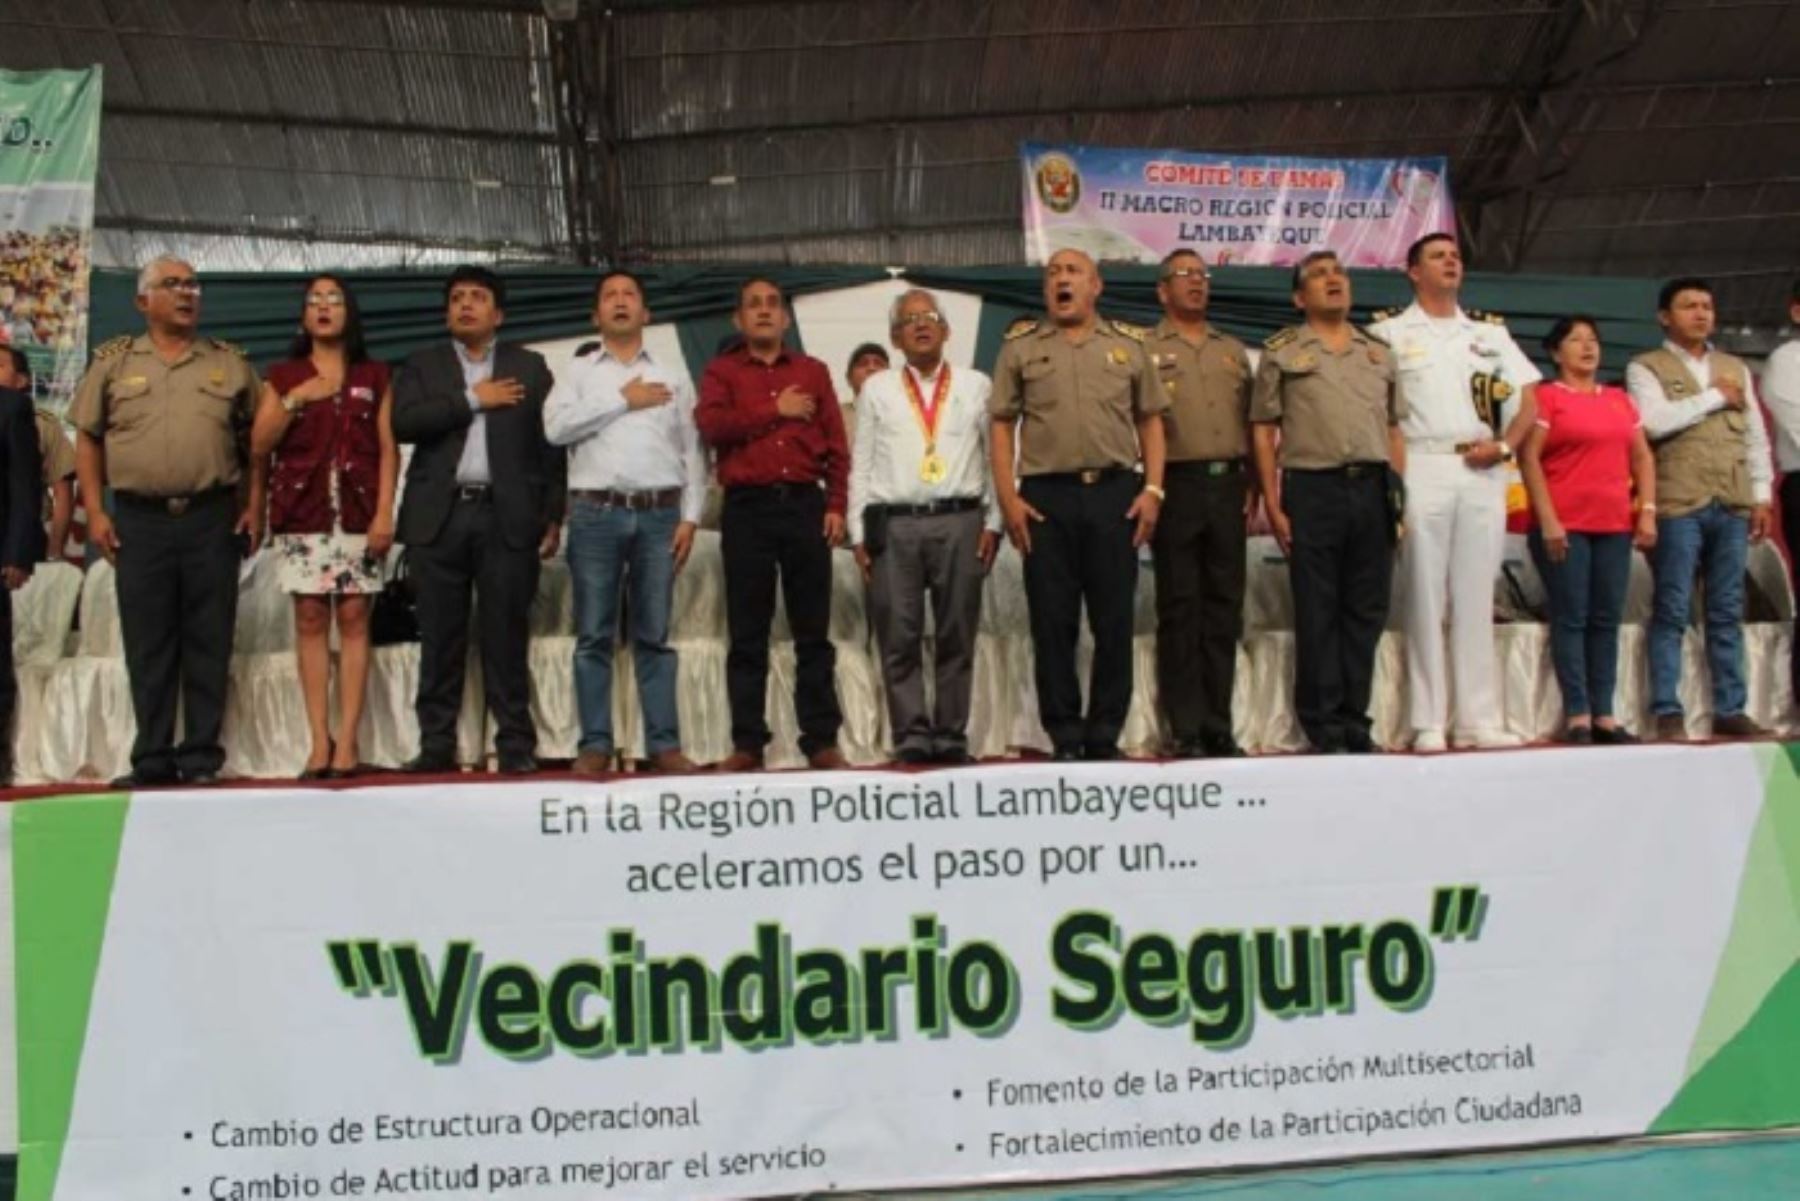 En un 20 por ciento descendió la comisión de delitos contra el patrimonio en la región Lambayeque, que es la incidencia delictiva que más afecta a la población de esta zona del país, informó el jefe de la Región Policial, coronel PNP Víctor Guillén Vega.